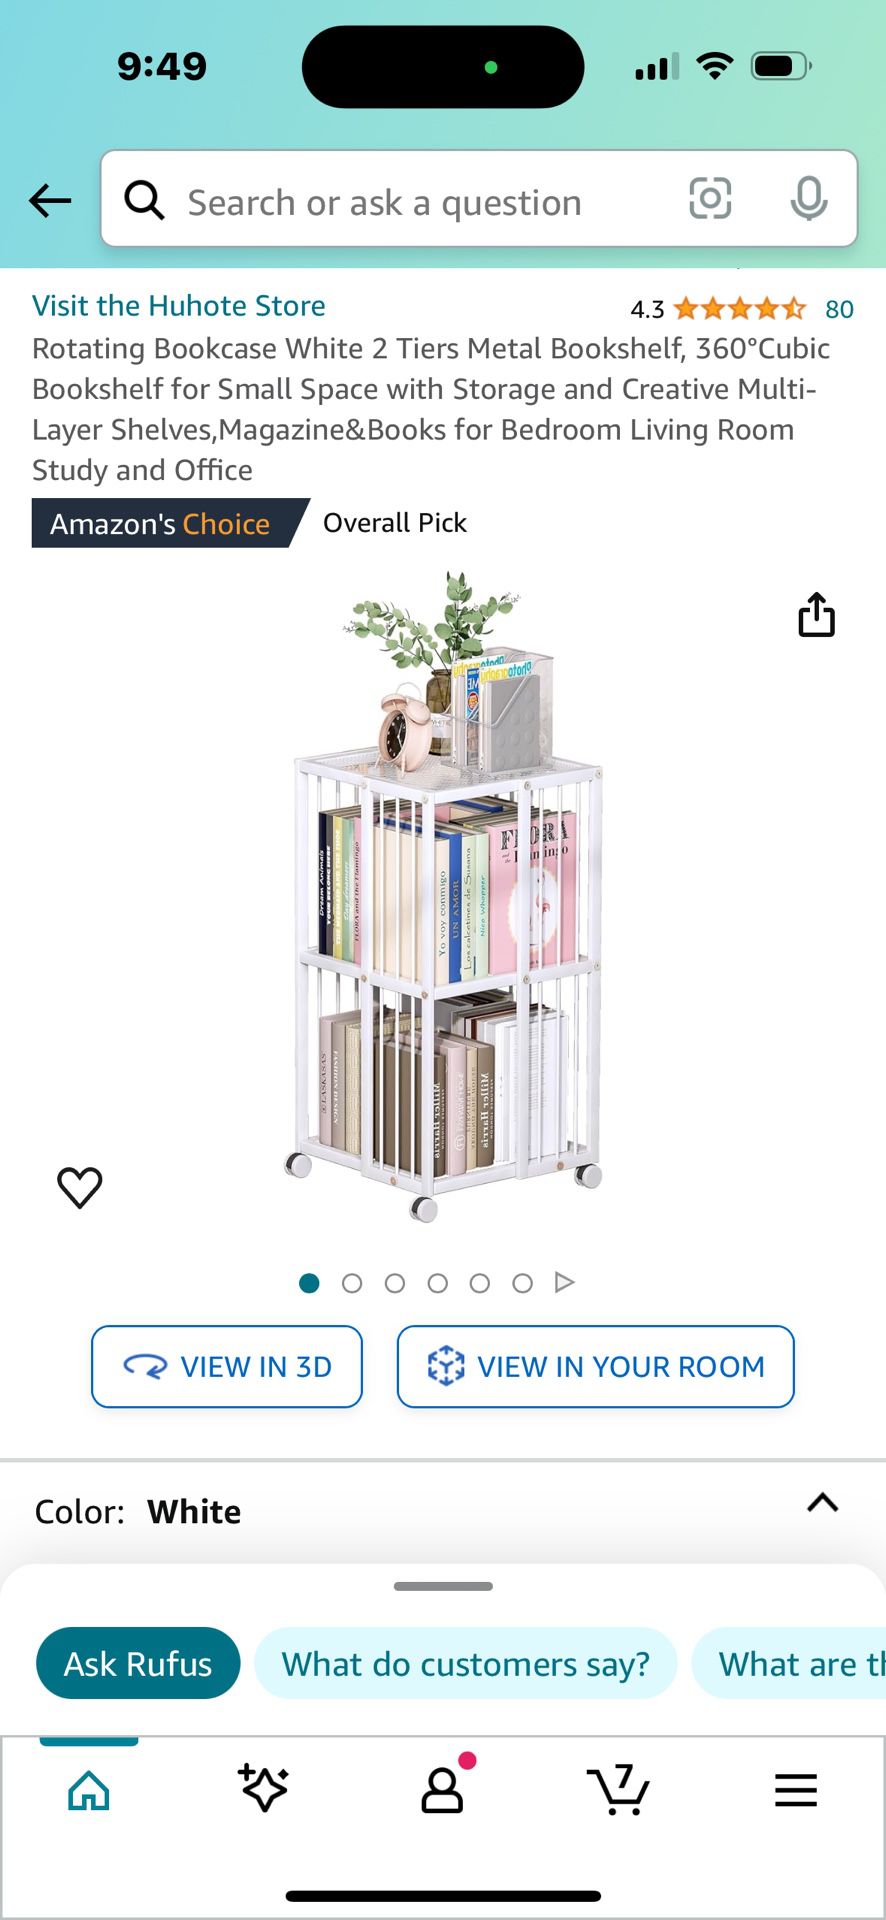 Gore Rotating Bookshelf